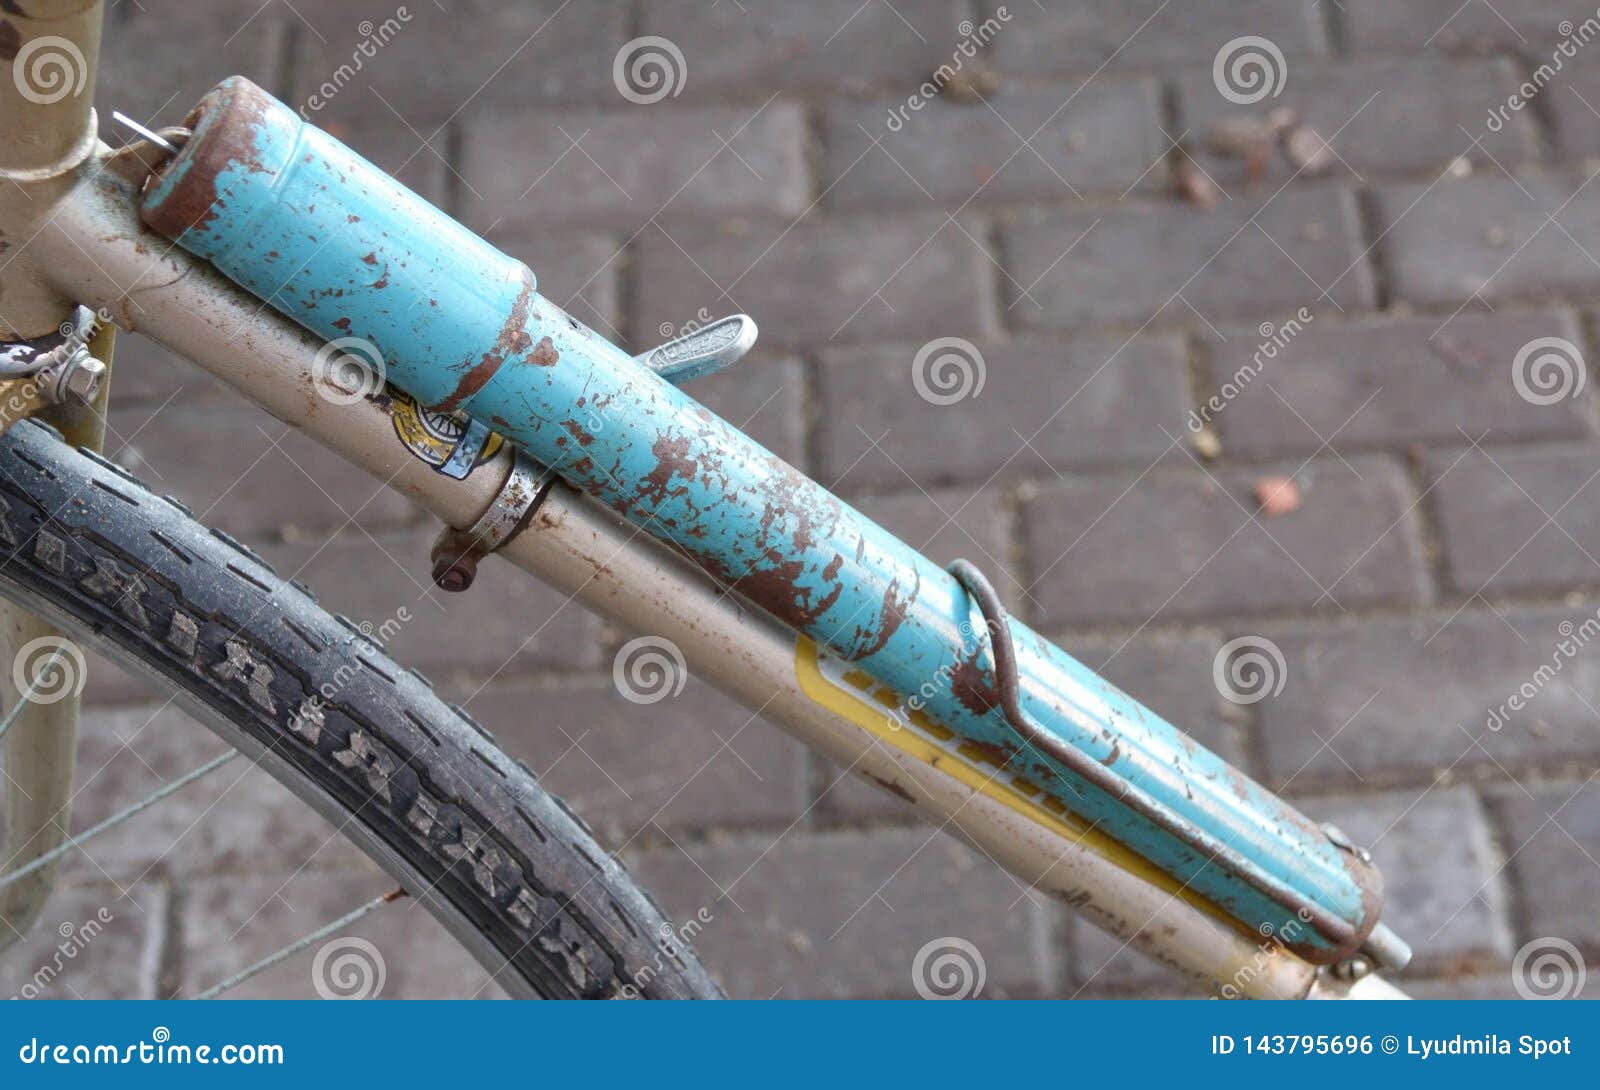 old bicycle pump